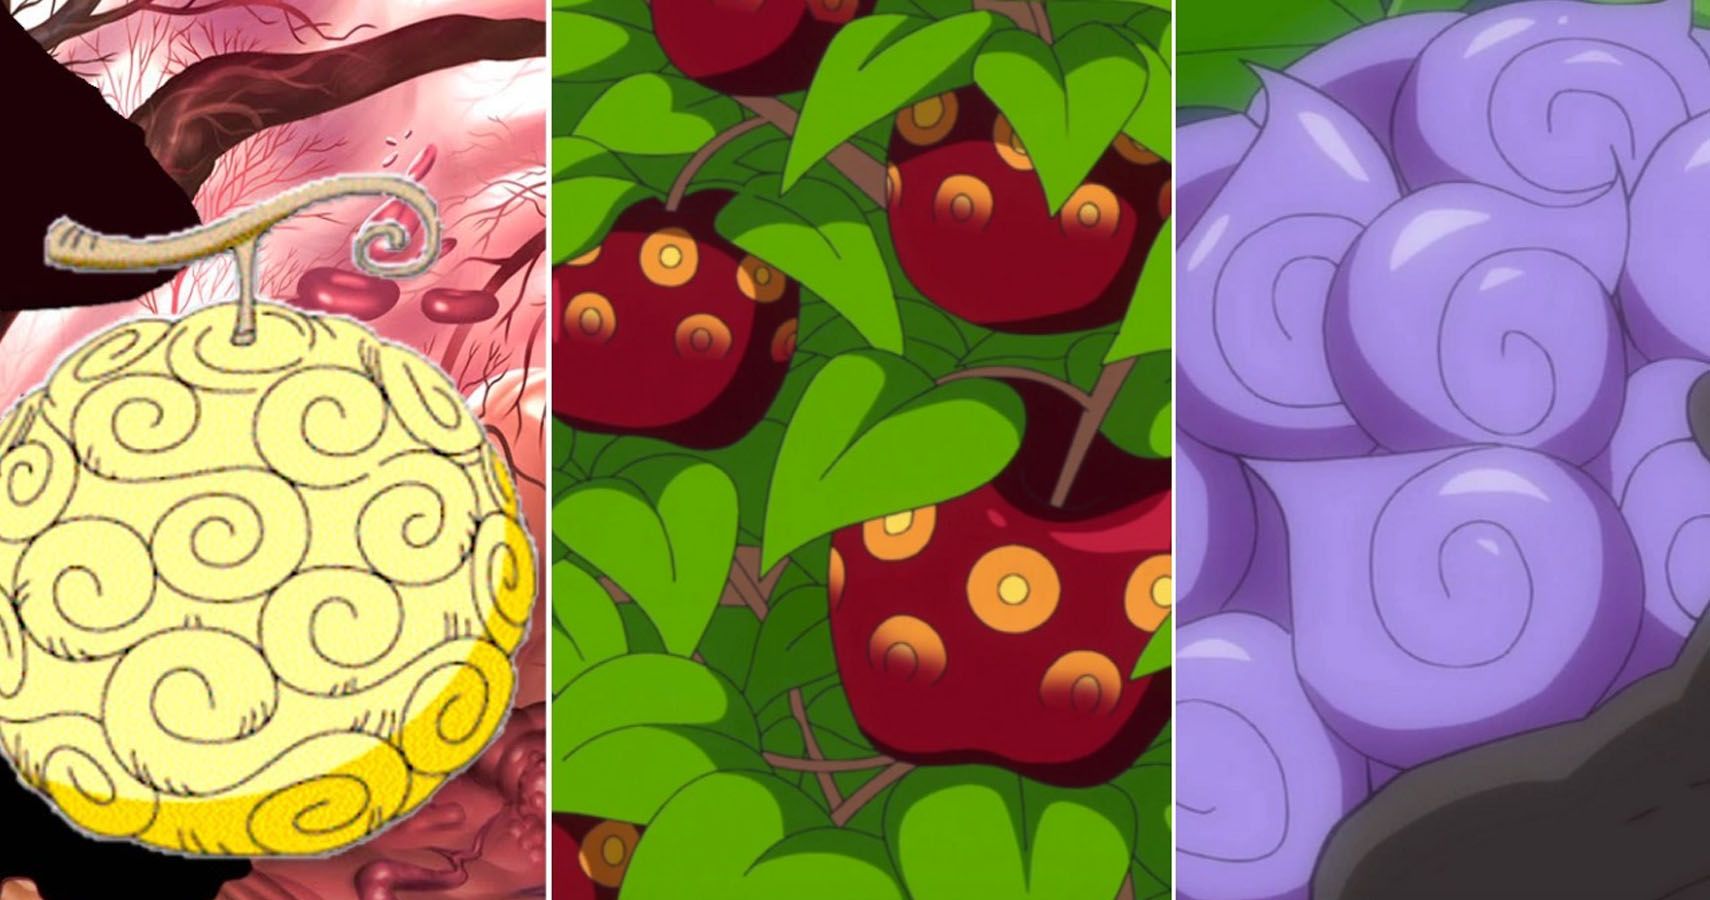 Trái Ác Quỷ Mạnh Nhất: Bạn đang tìm kiếm một loại trái cây được coi là mạnh nhất trong One Piece? Hãy cùng khám phá hình ảnh về Trái Ác Quỷ Mạnh Nhất và khám phá sức mạnh đặc biệt của nó trong thế giới huyền bí này nhé.